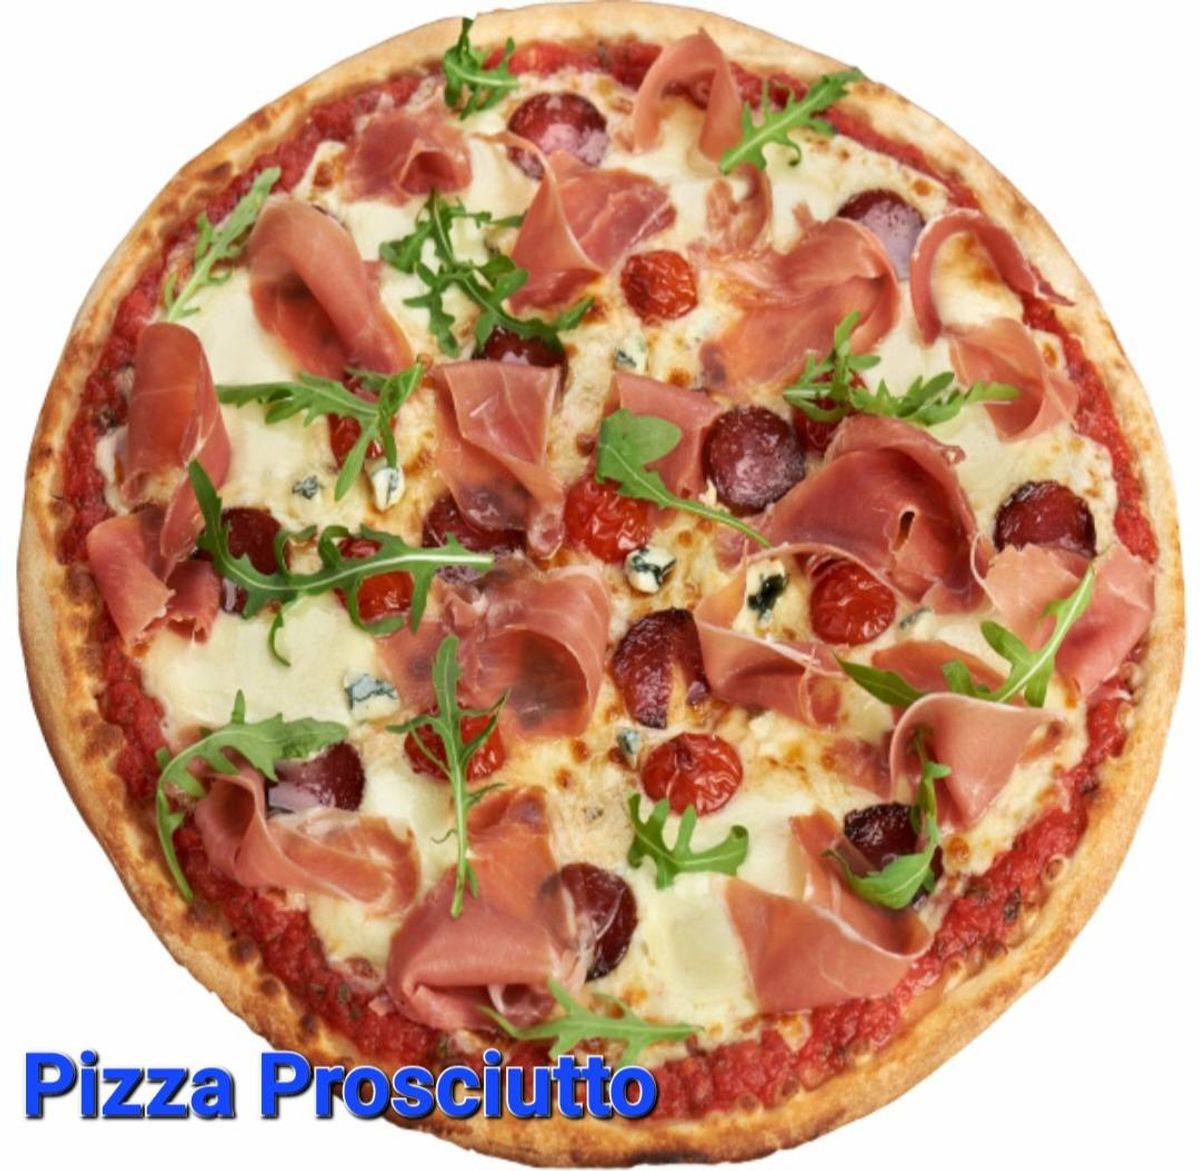 Pizza Prosciutto ( Cotto )